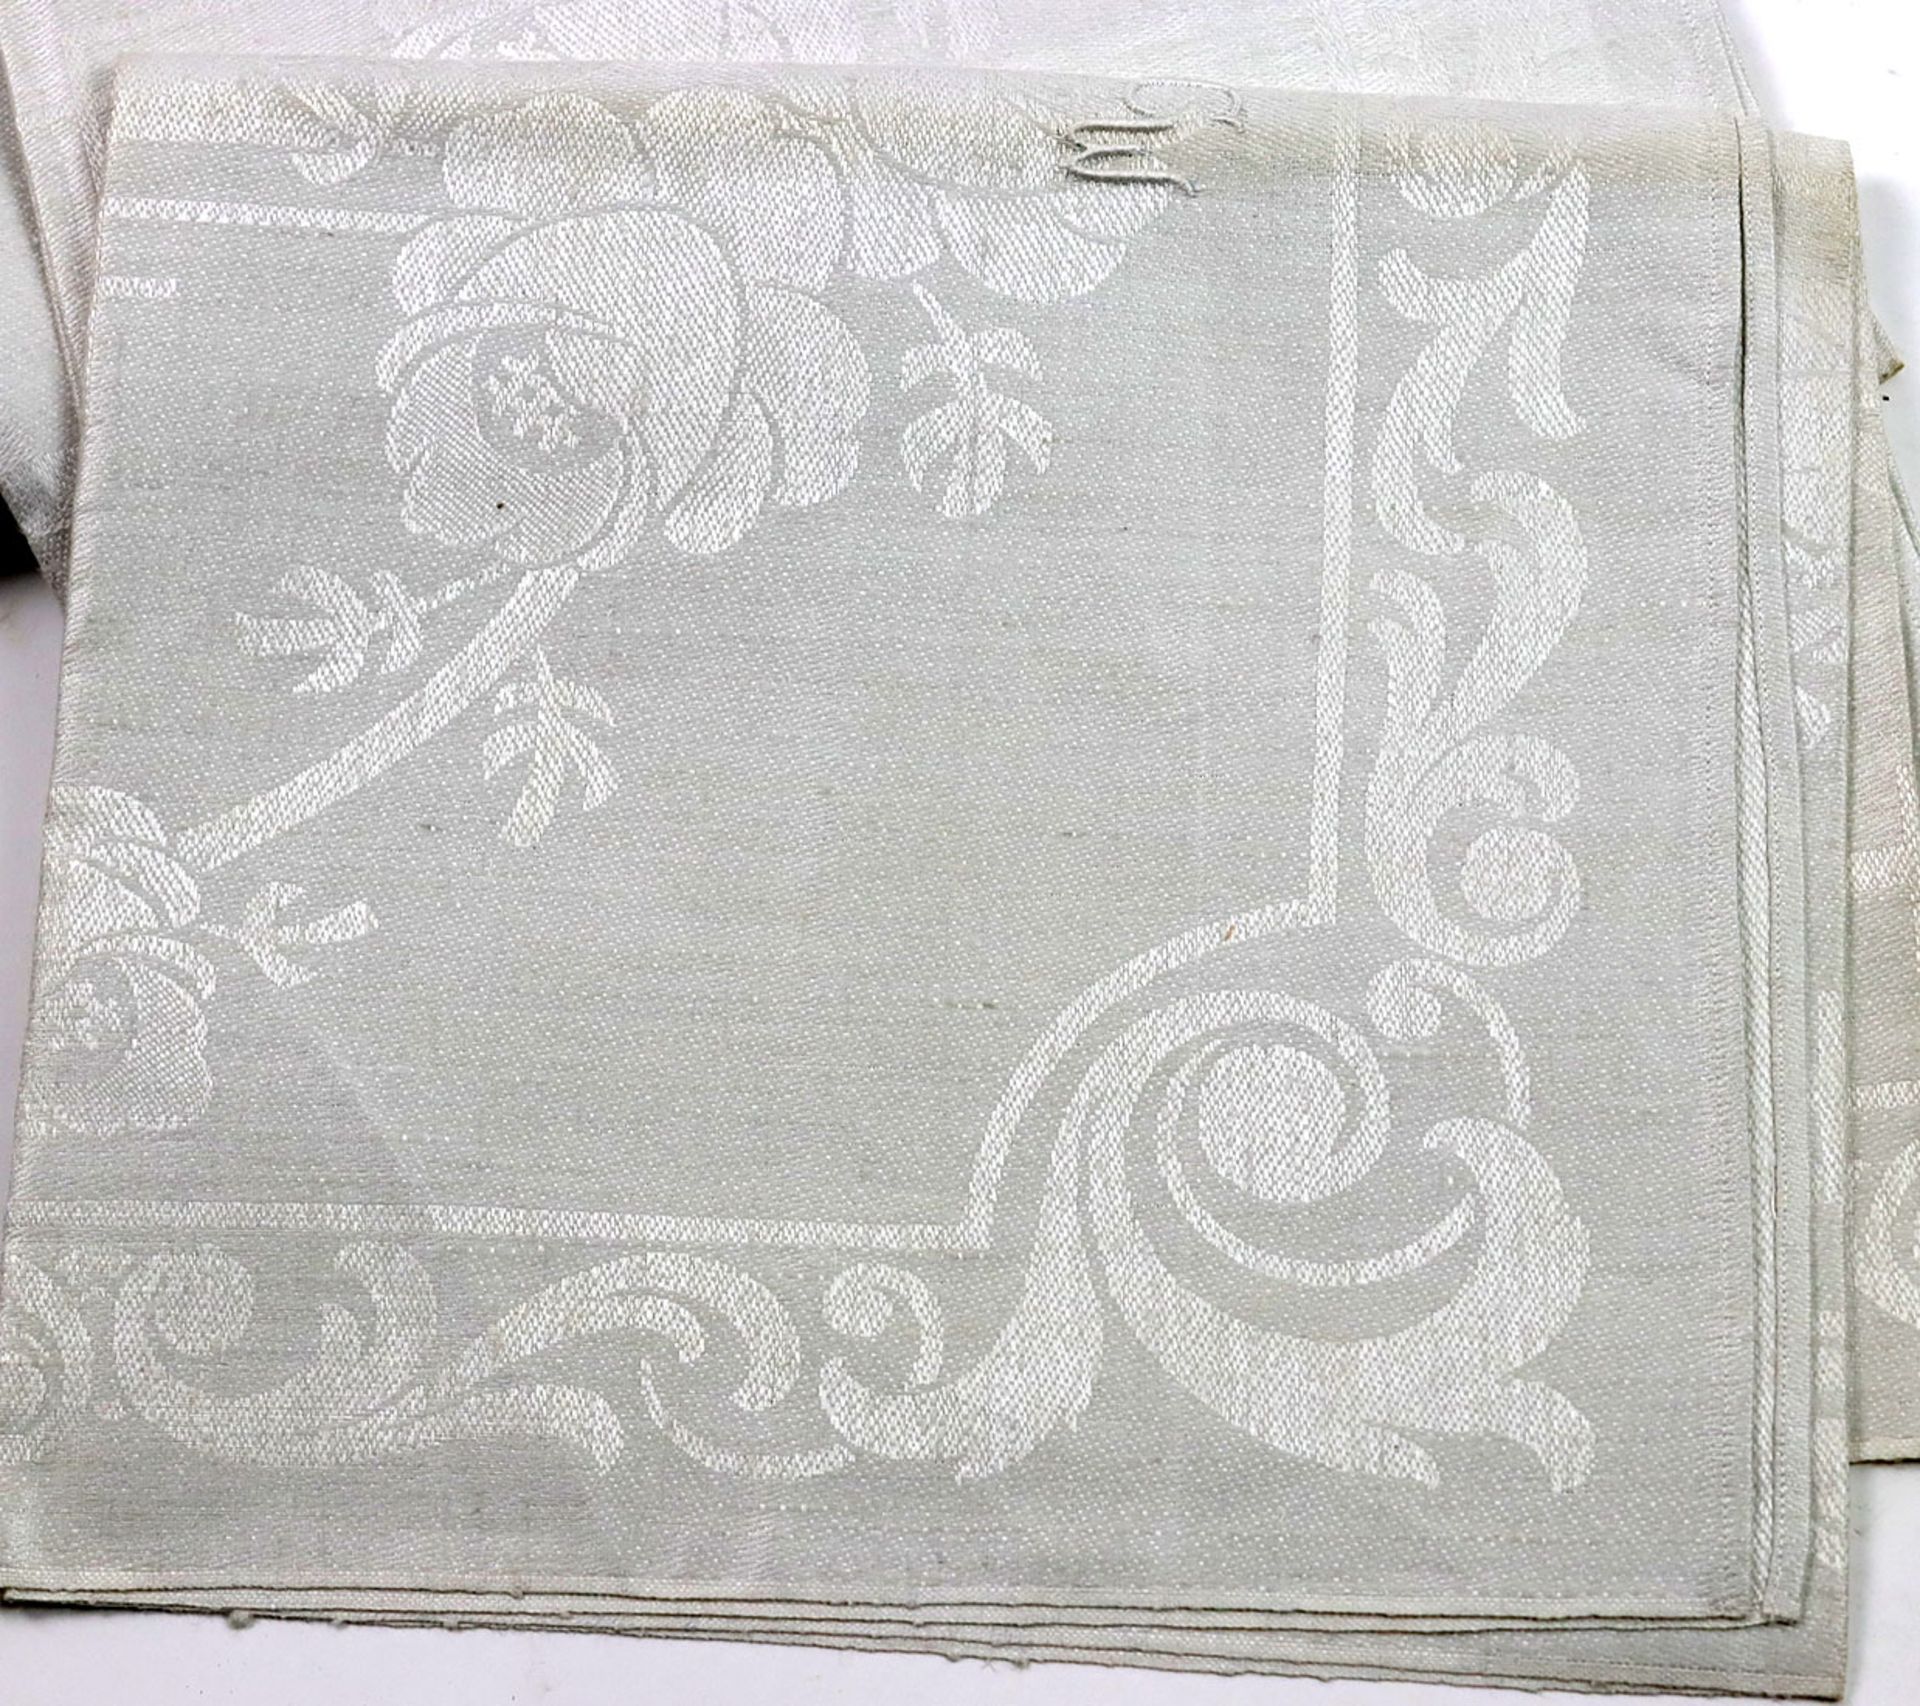 Satz Leinen Handtücherhelles Leinen mit eingewebtem stilisiertem Rosenmustern, mittig große - Bild 2 aus 2